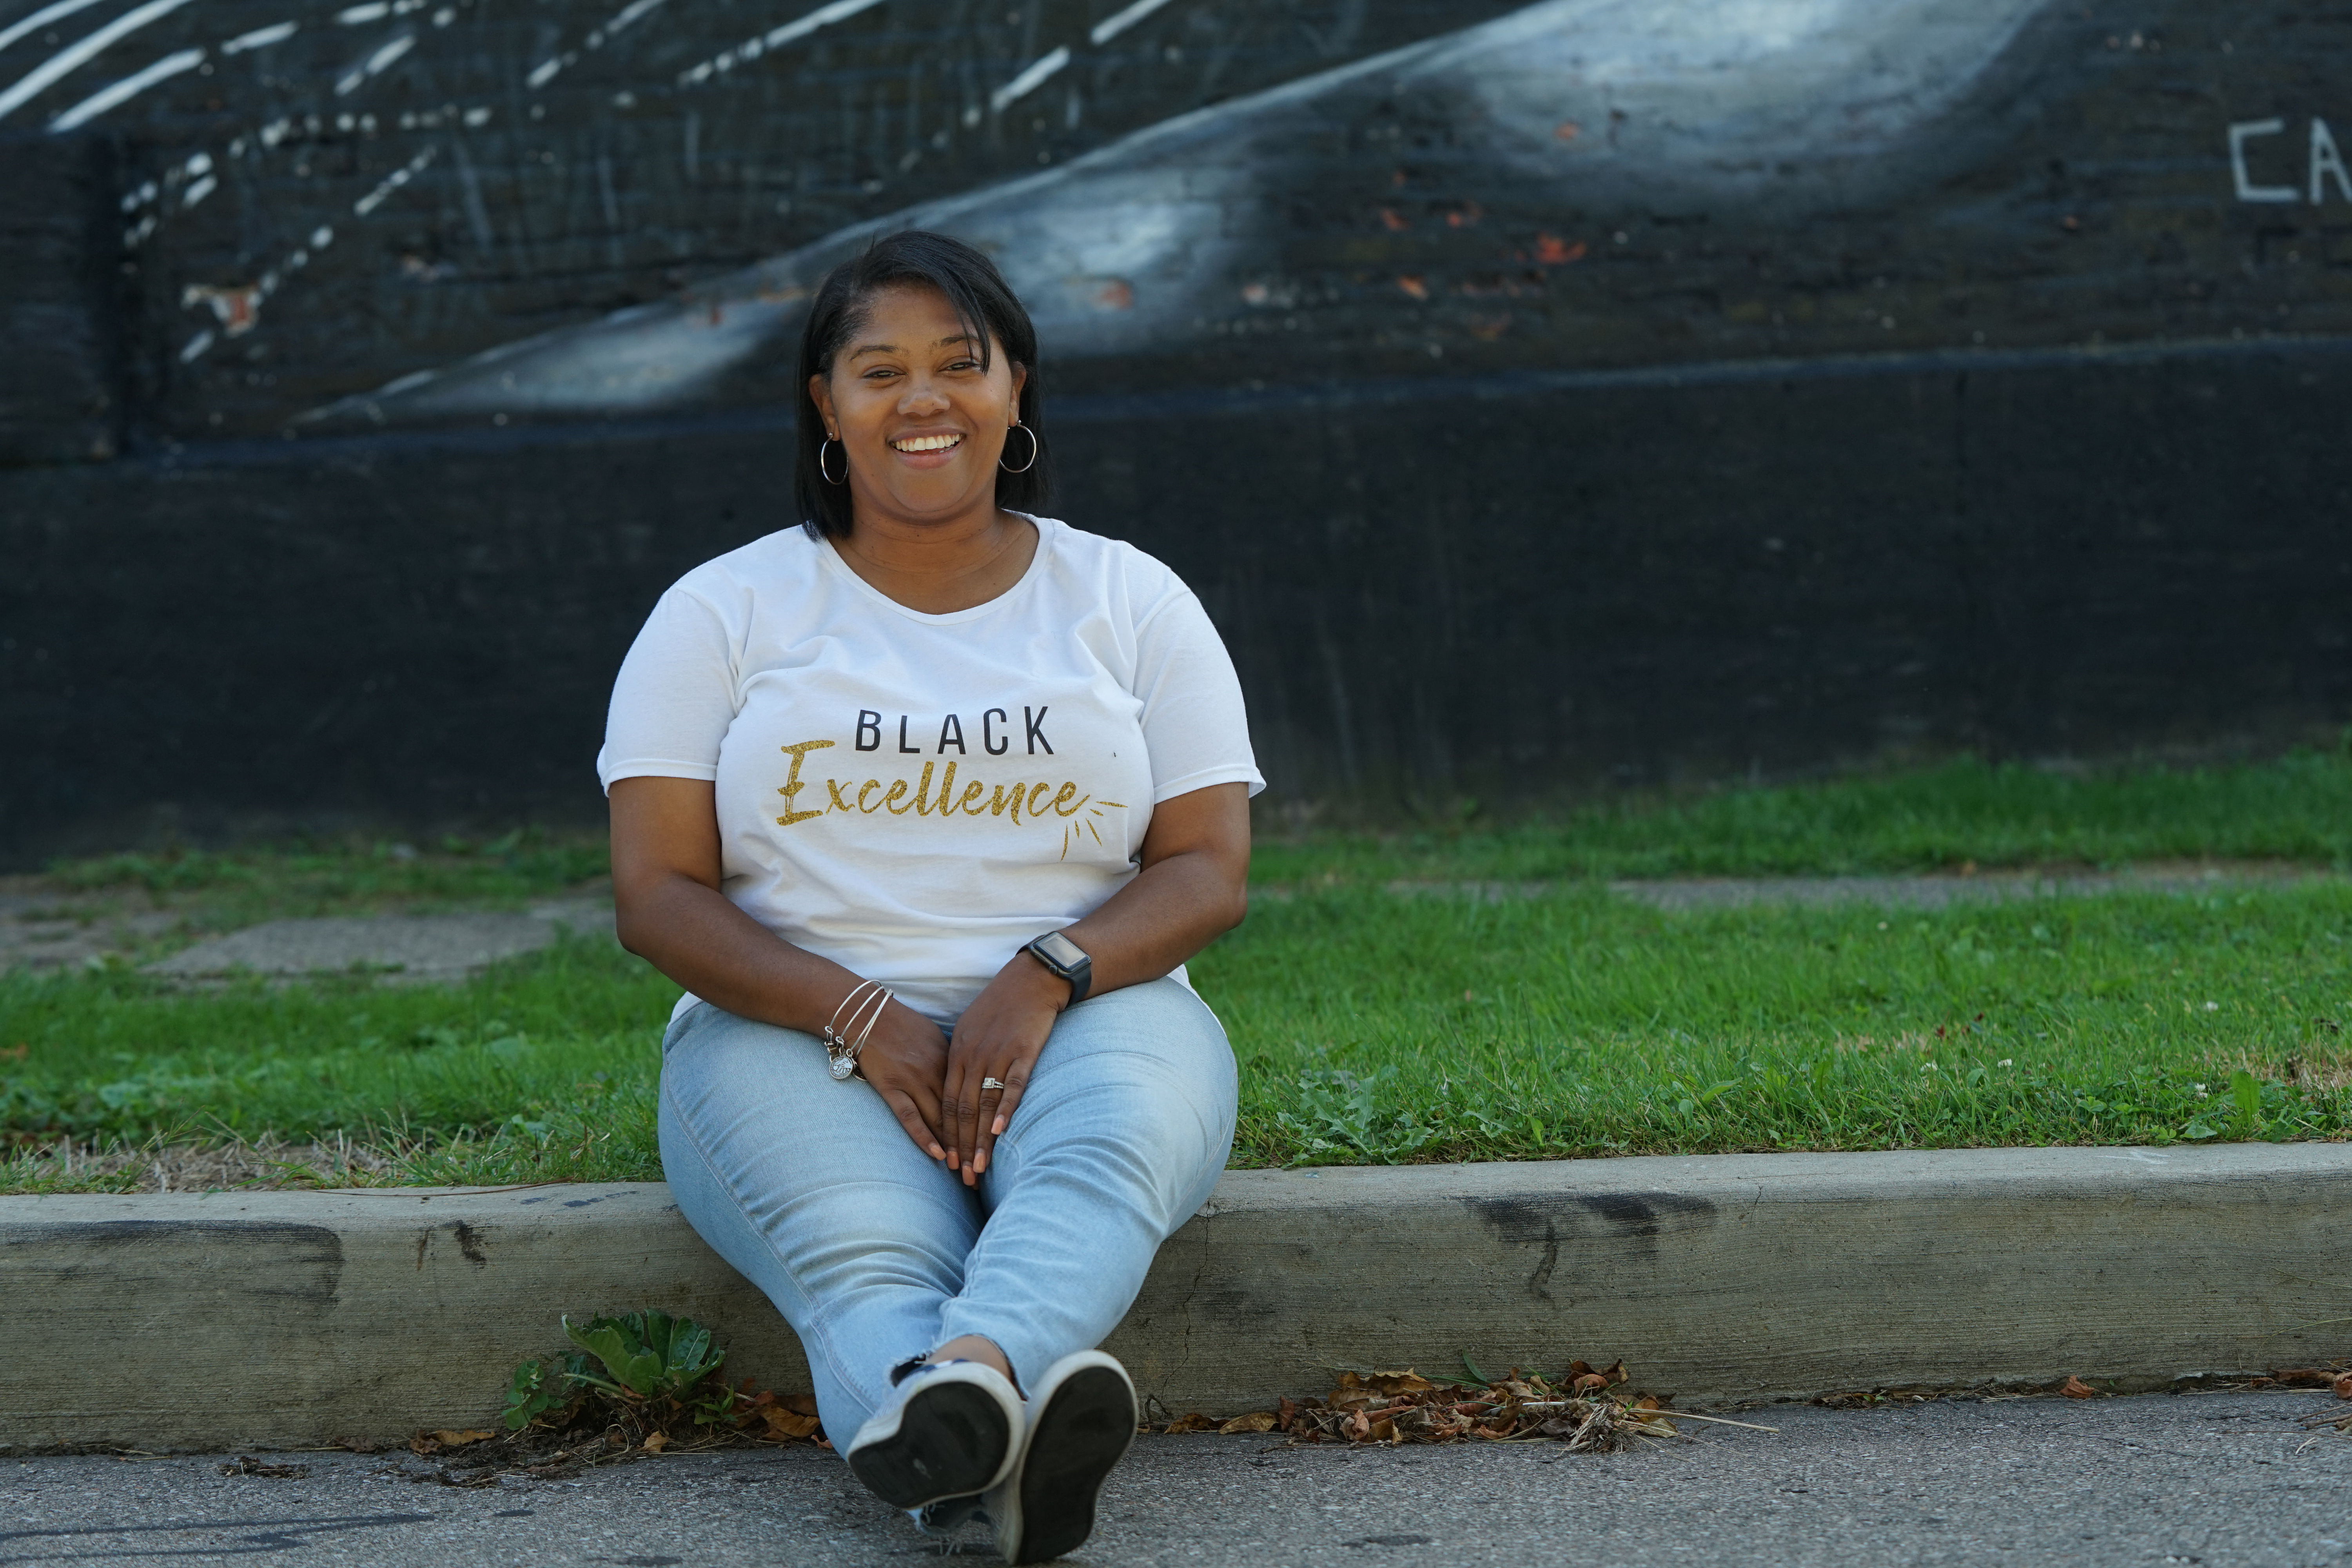 Black woman wear Blacme t-shirt